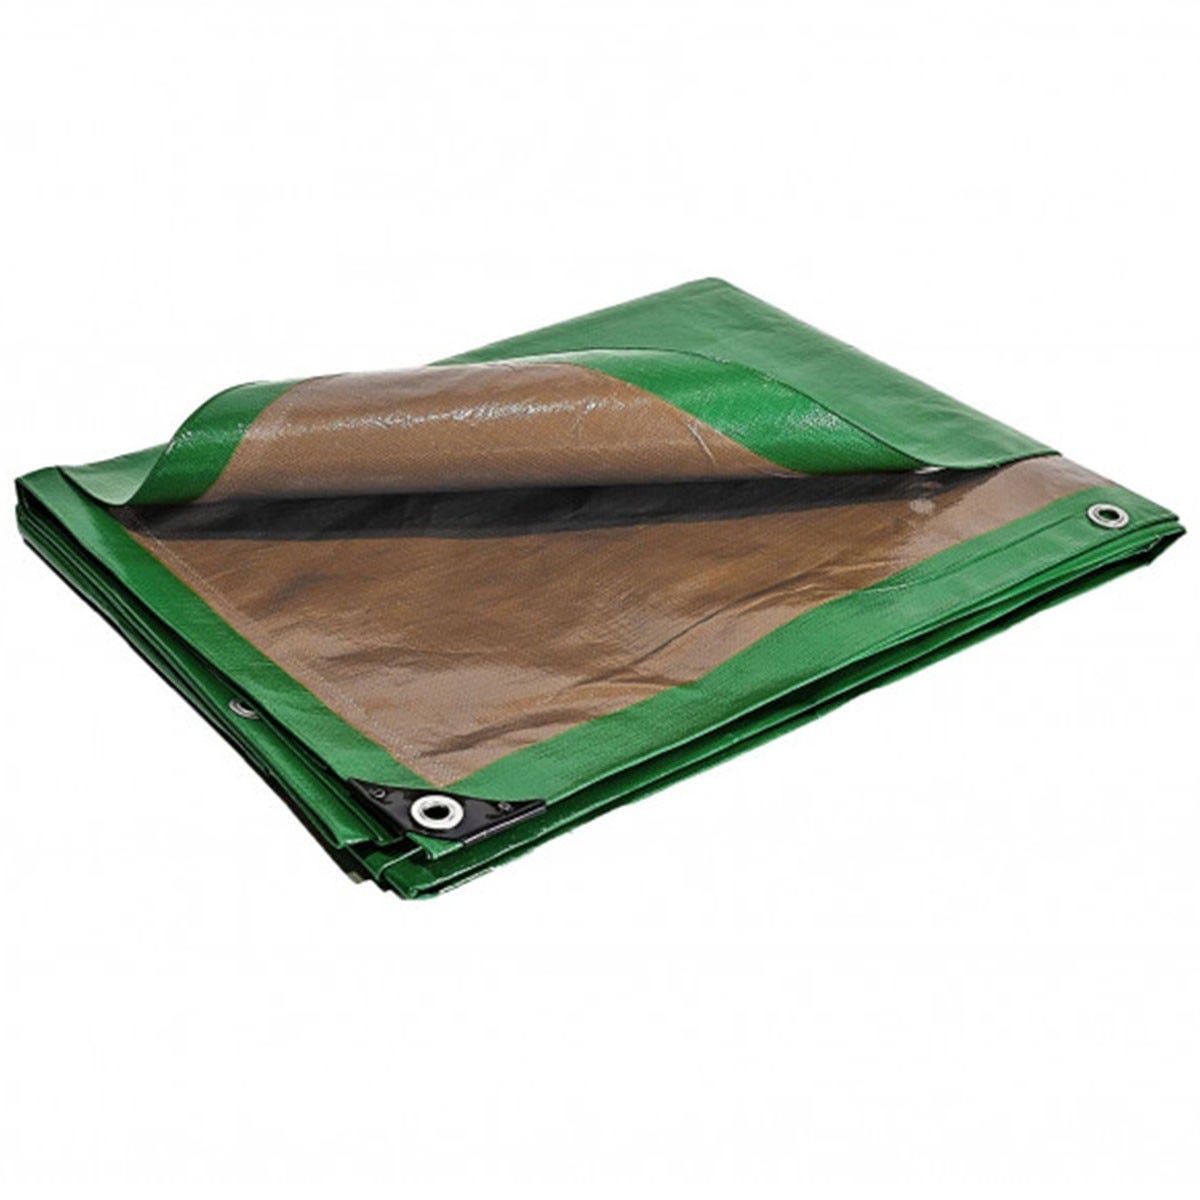 Telo impermeabile in plastica verde e marrone trattato anti-UV 4x5 m  250g/m² - telo protettivo in polietilene di alta qualità